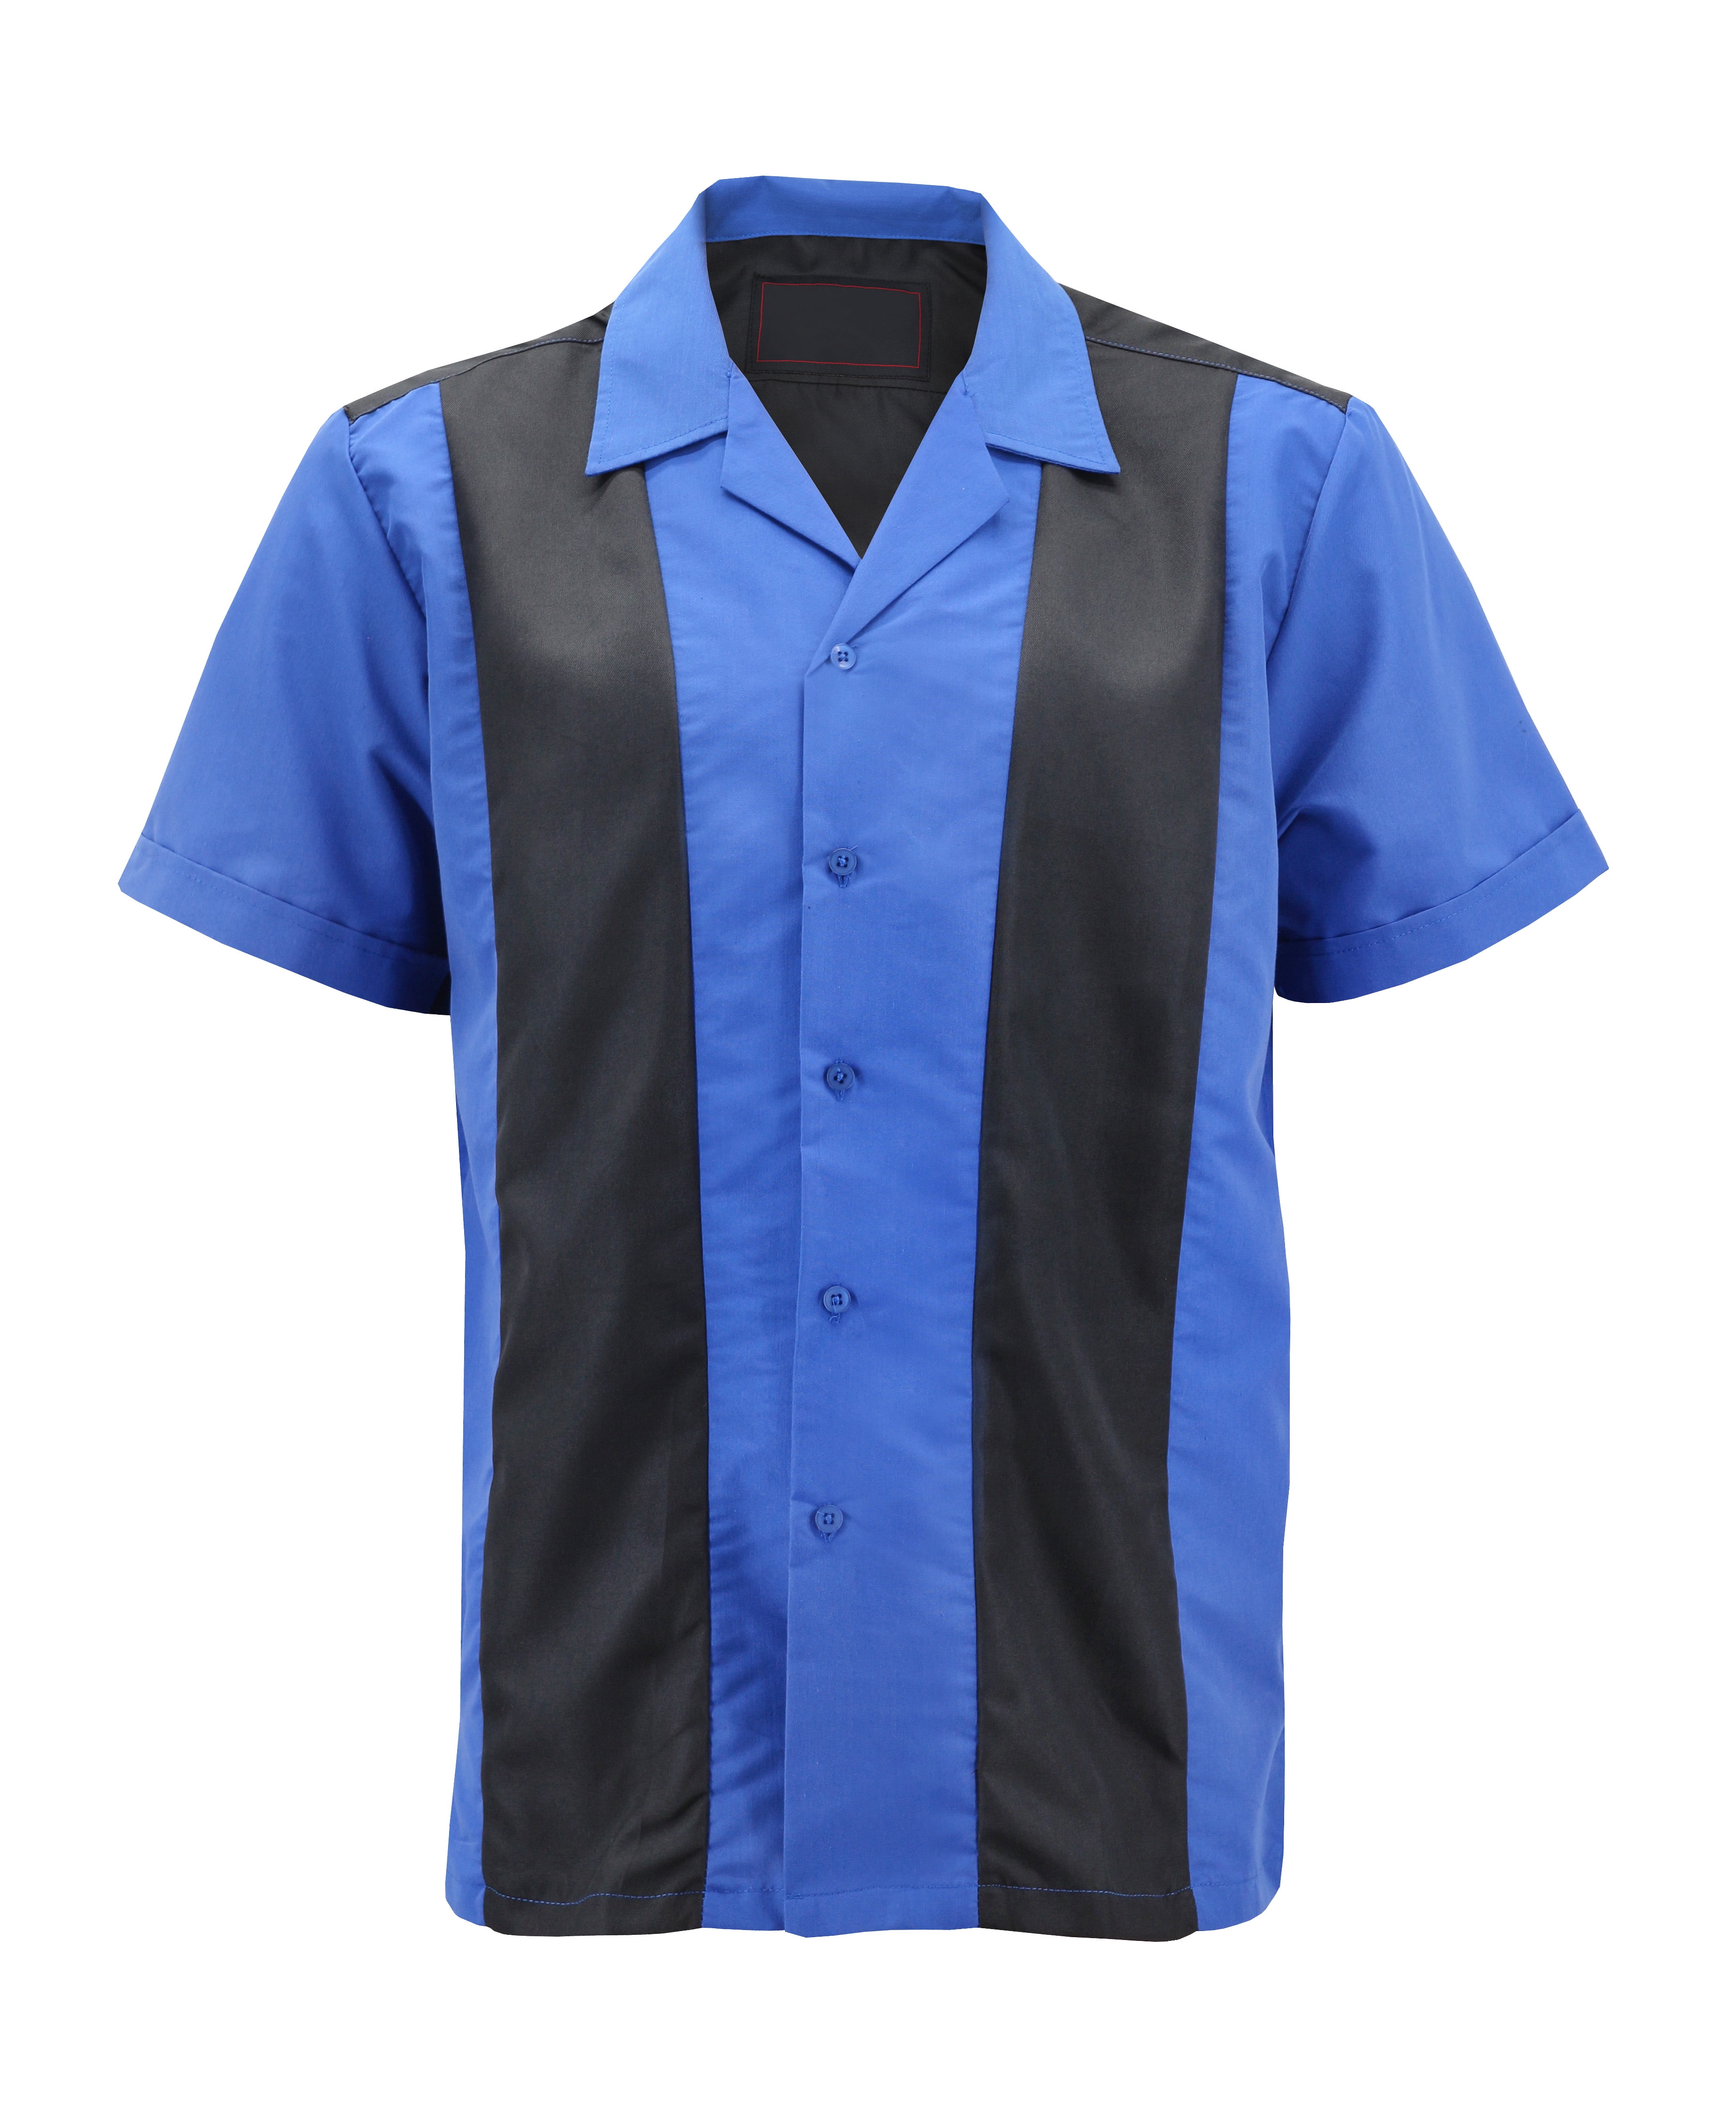 Big Tall Royal Blue on Black Mens Retro Bowling Shirt